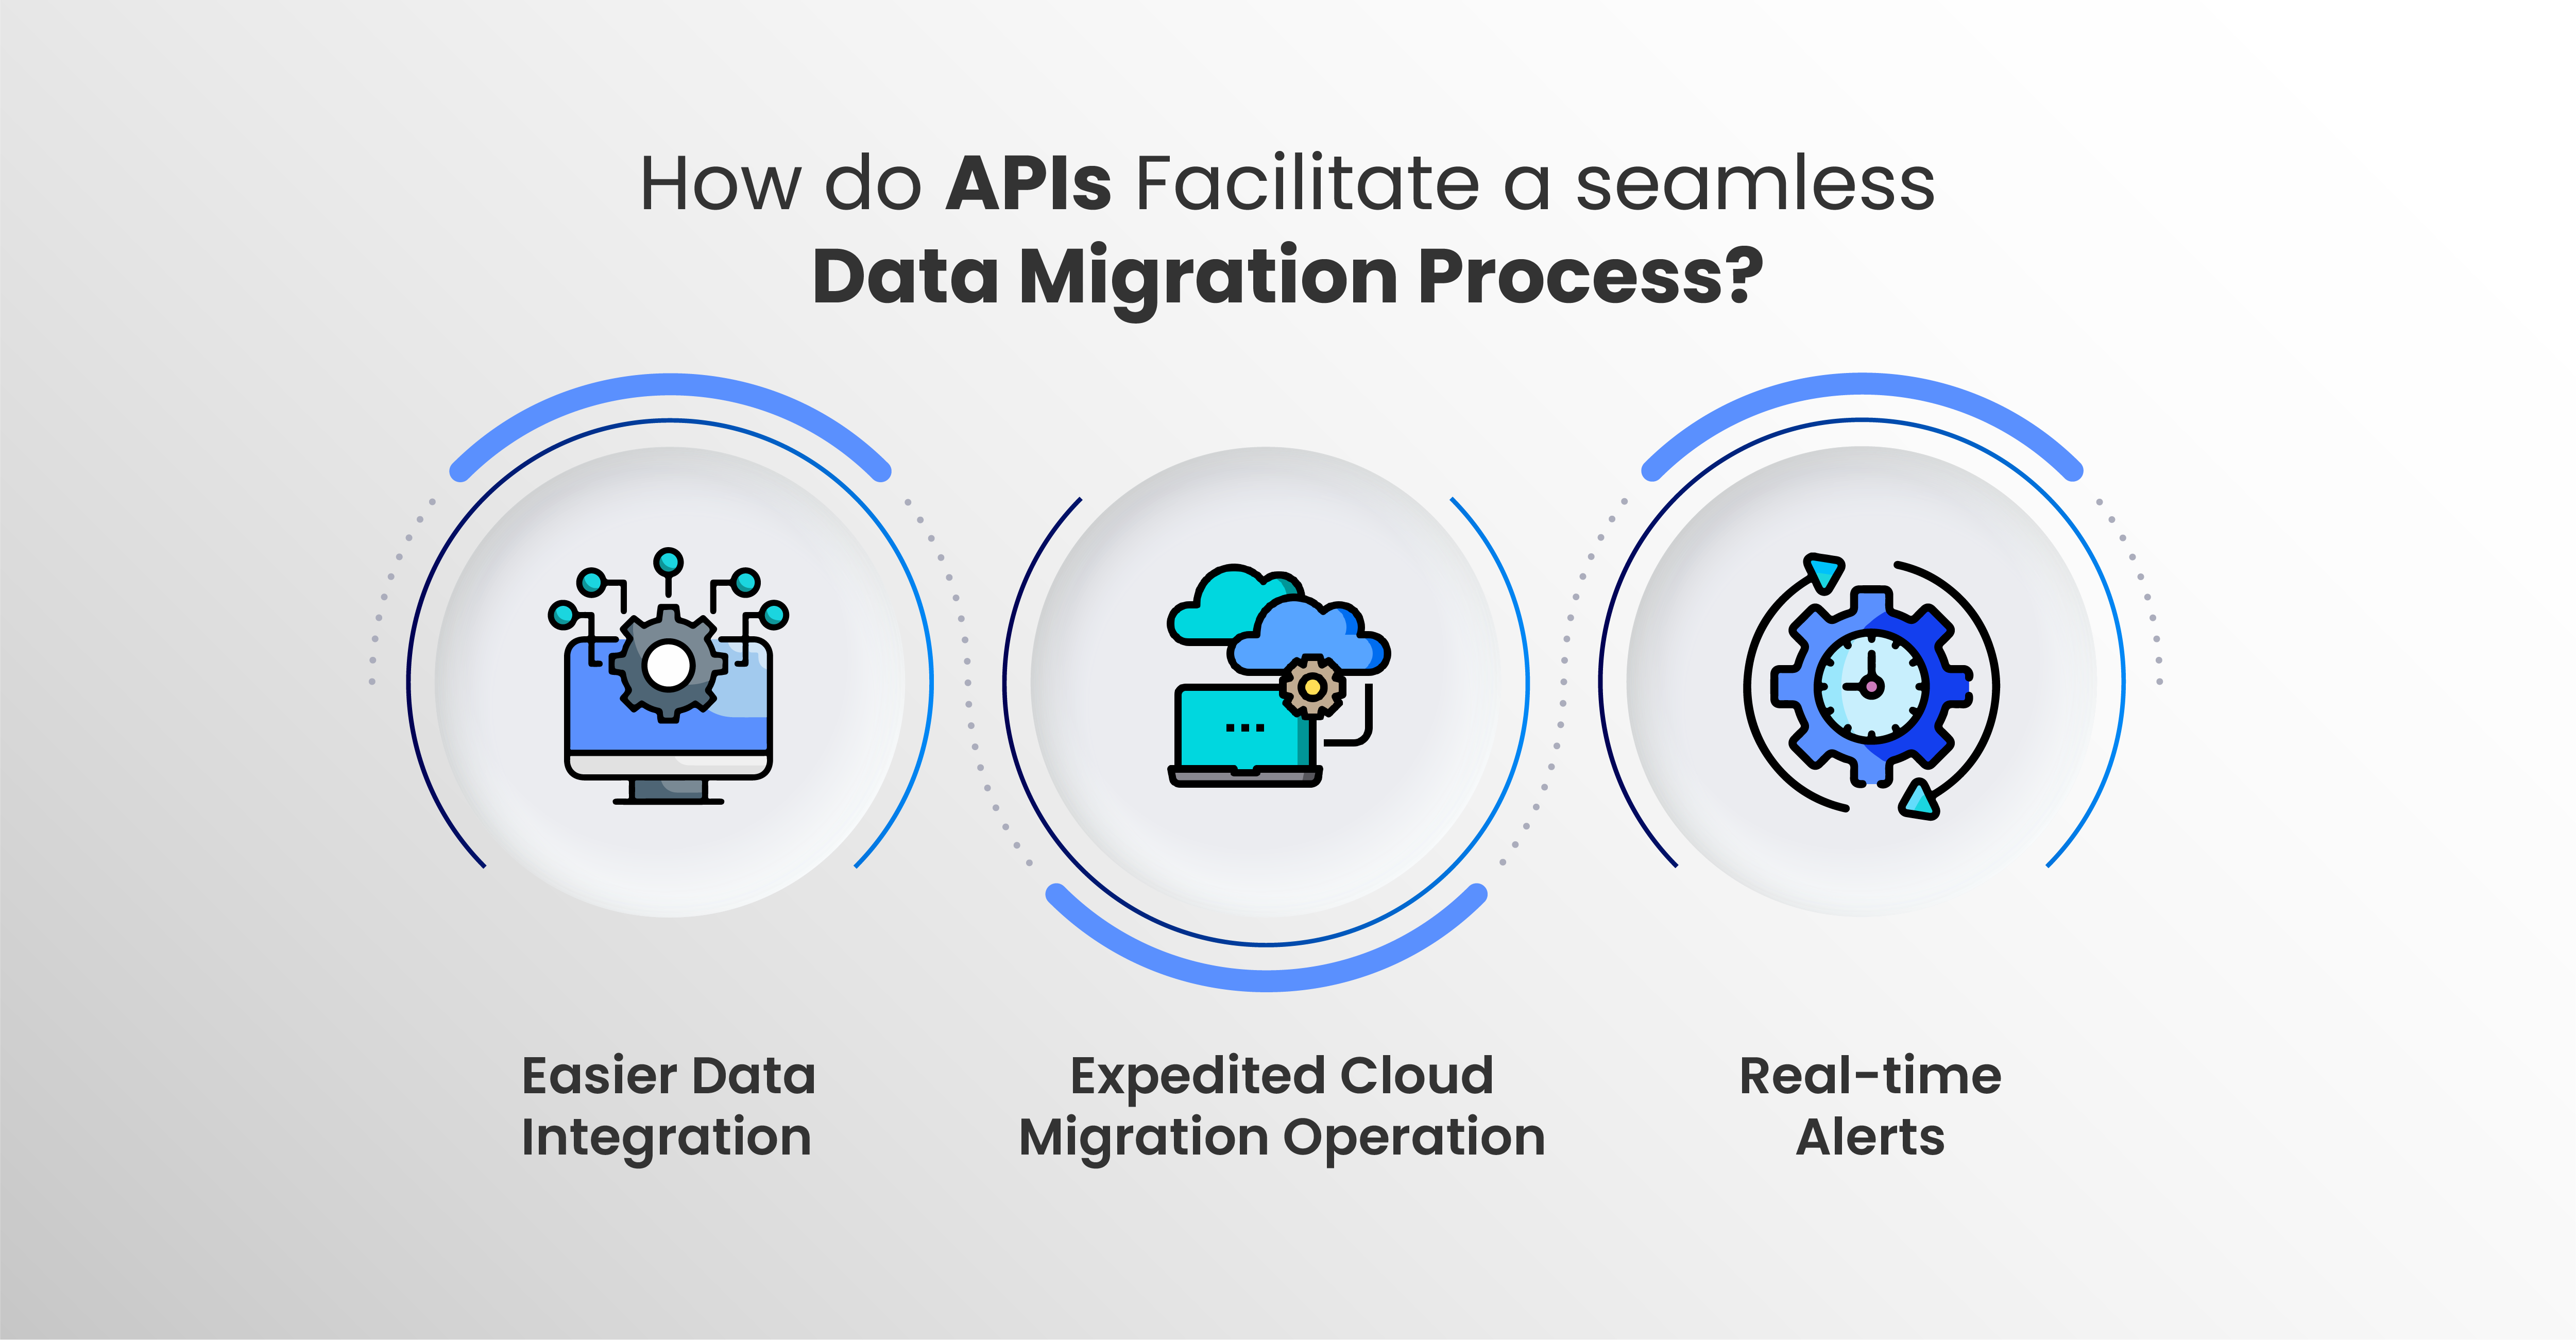 How do APIs Facilitate a Seamless Data Migration Process?